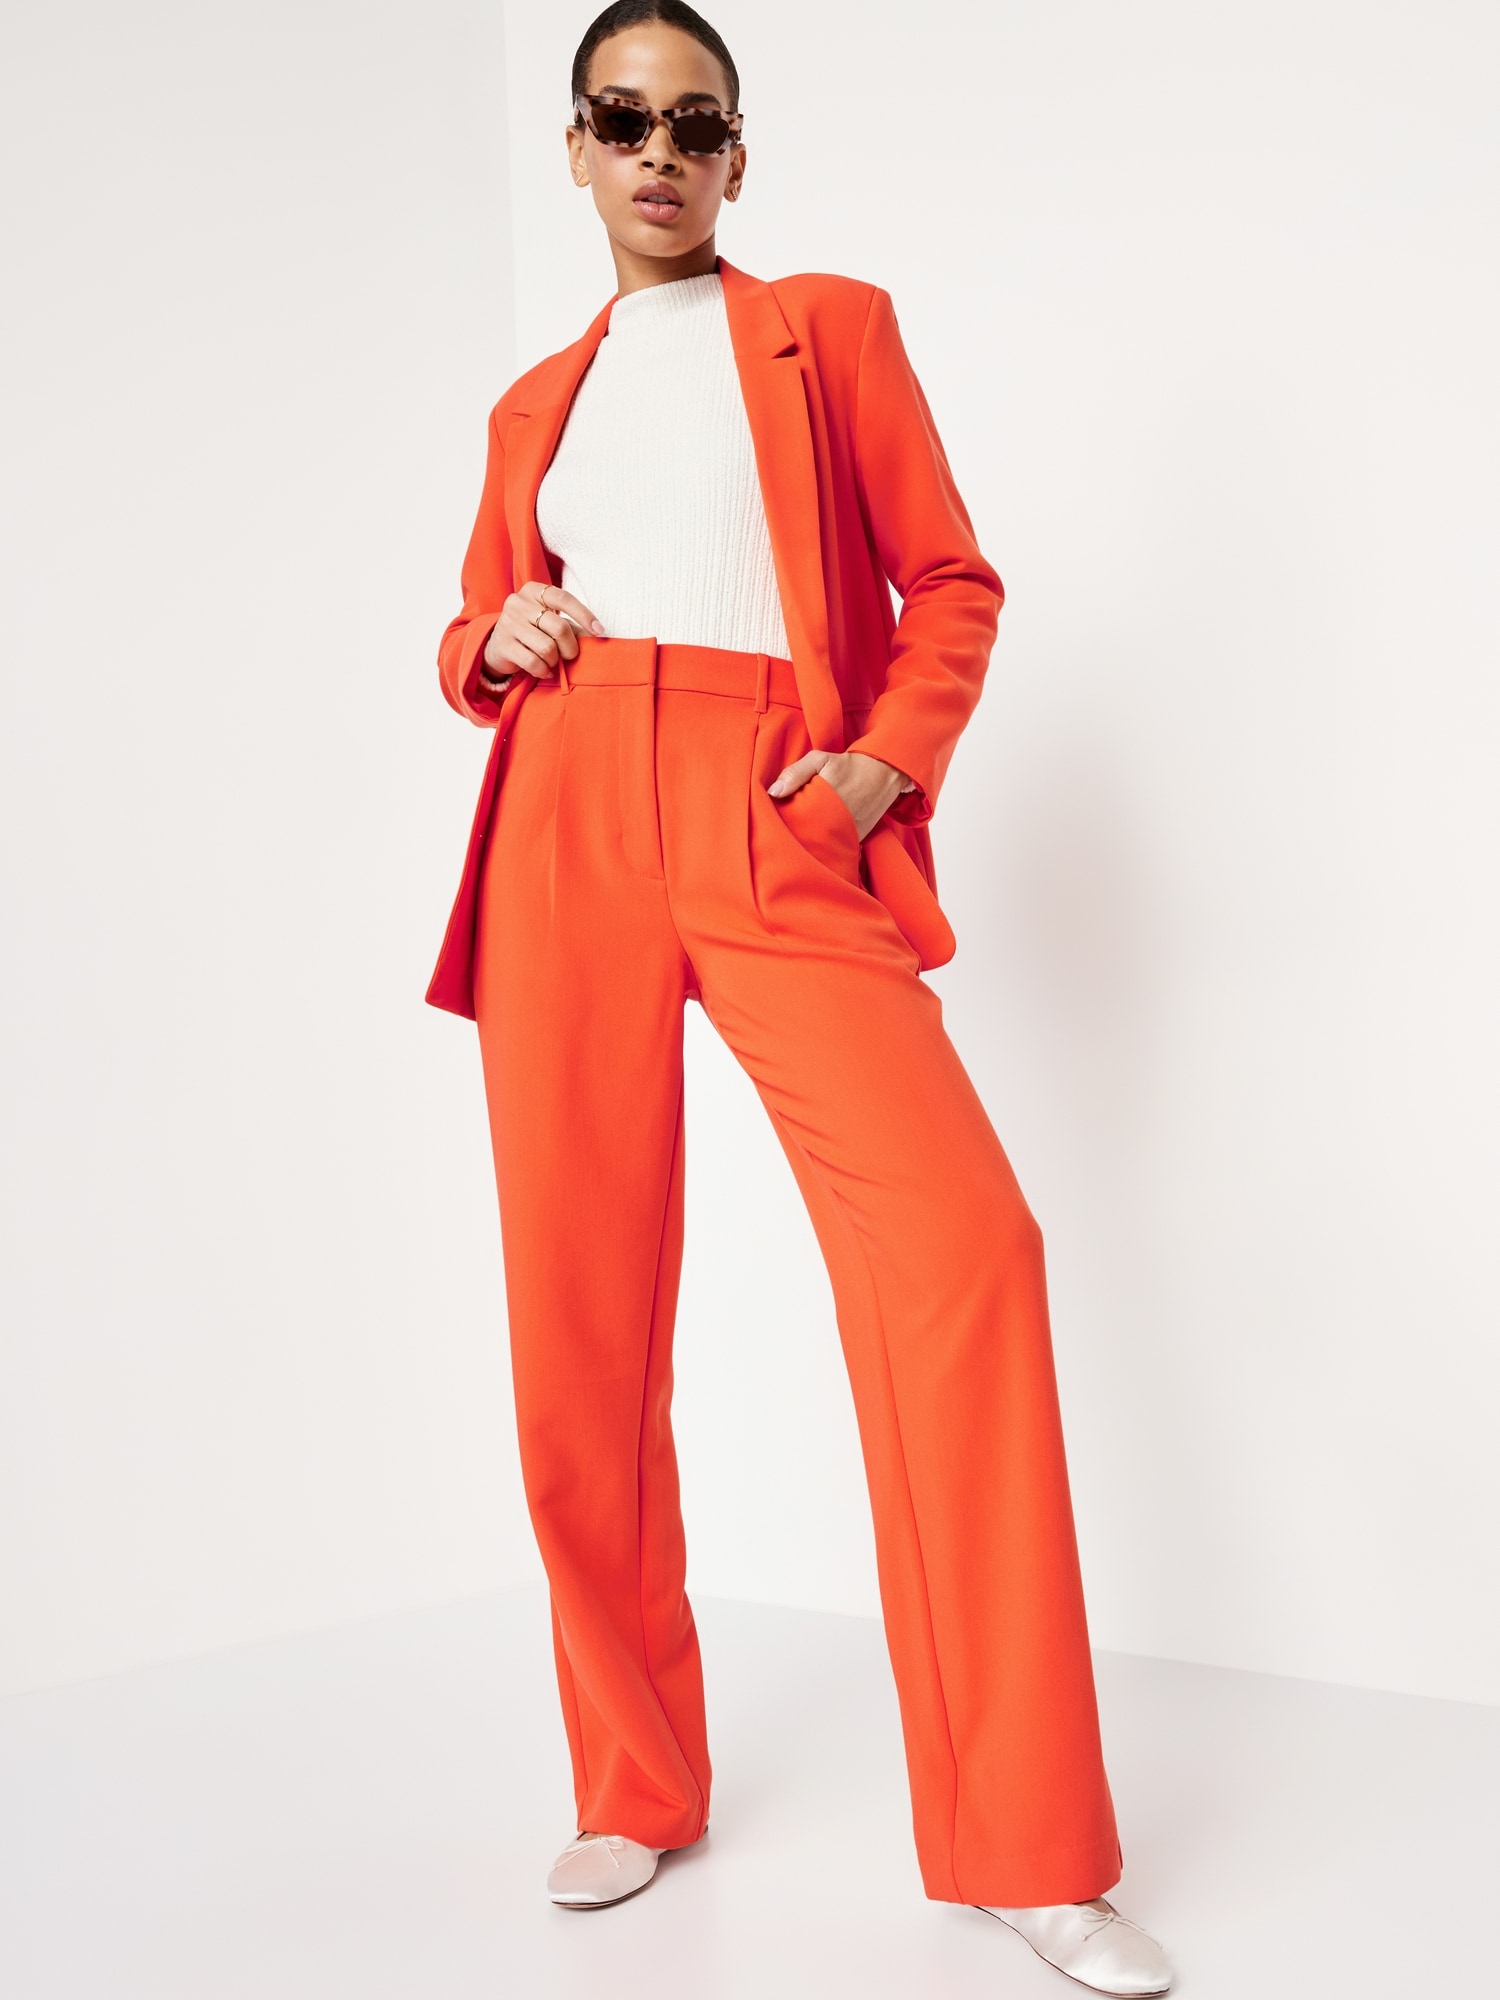 Women's Suit Set 2 Pieces Elegant Red Slim Fit Blazer Pant Buttons Size M